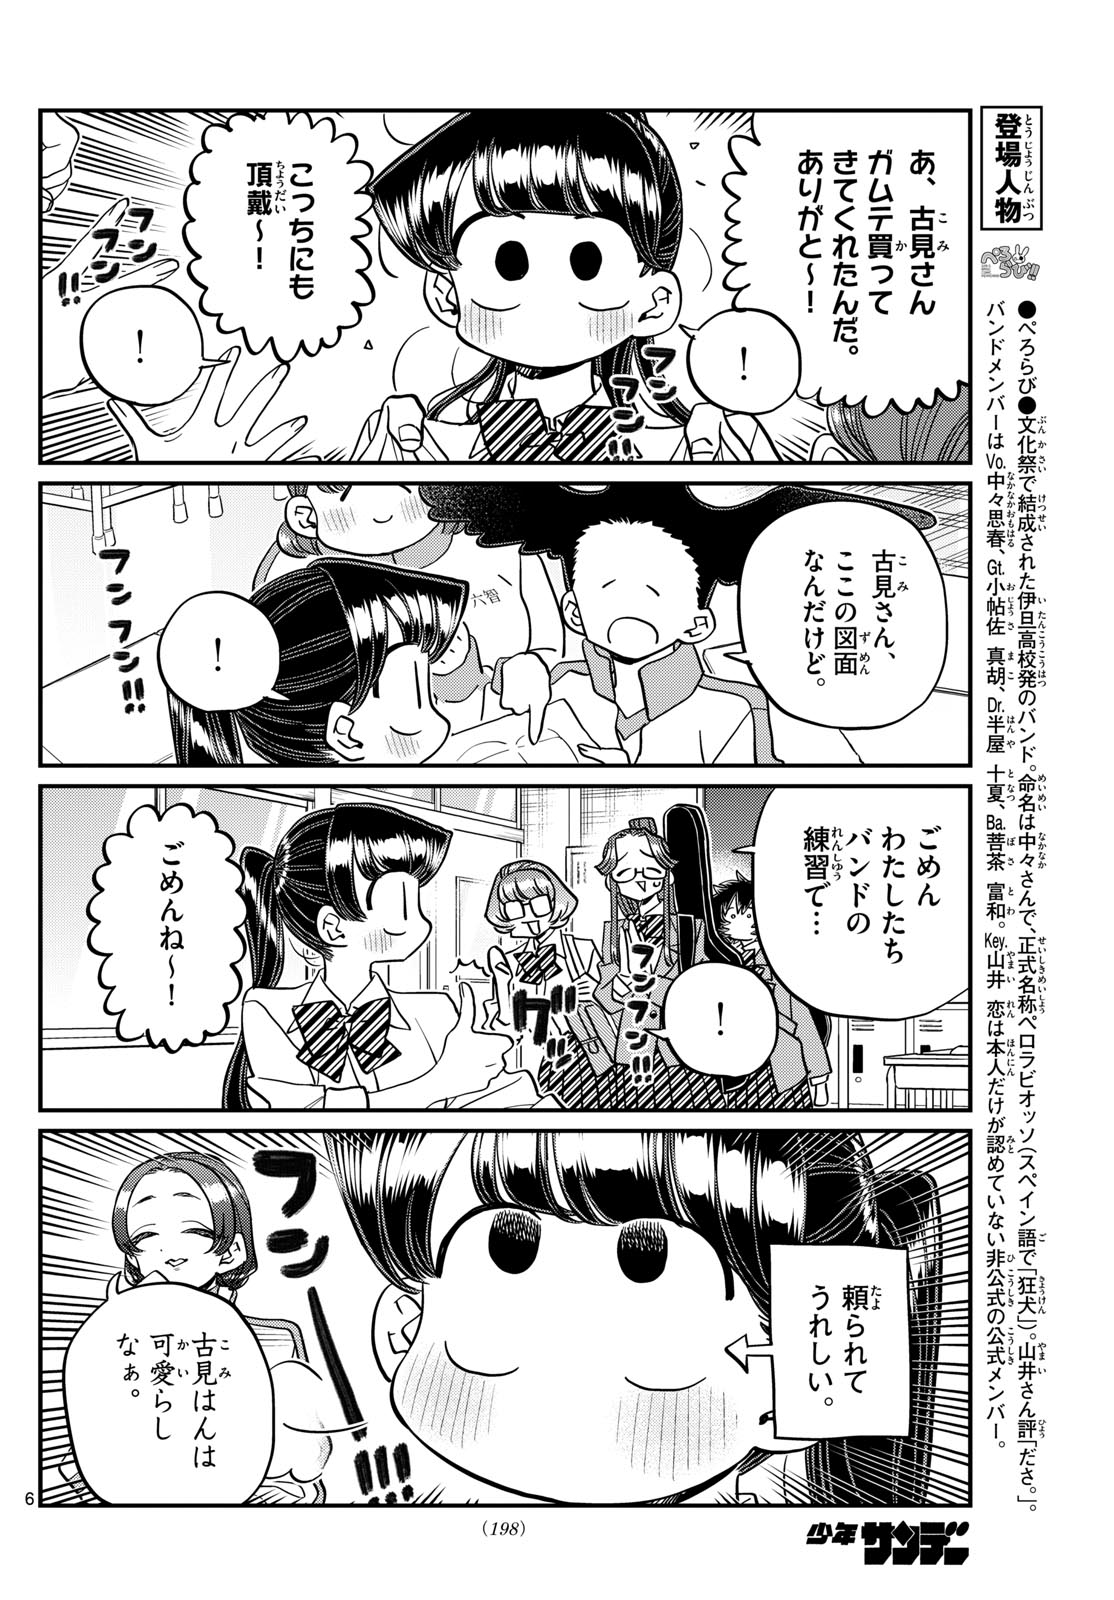 Komi-san wa Komyushou Desu - Chapter 448 - Page 6